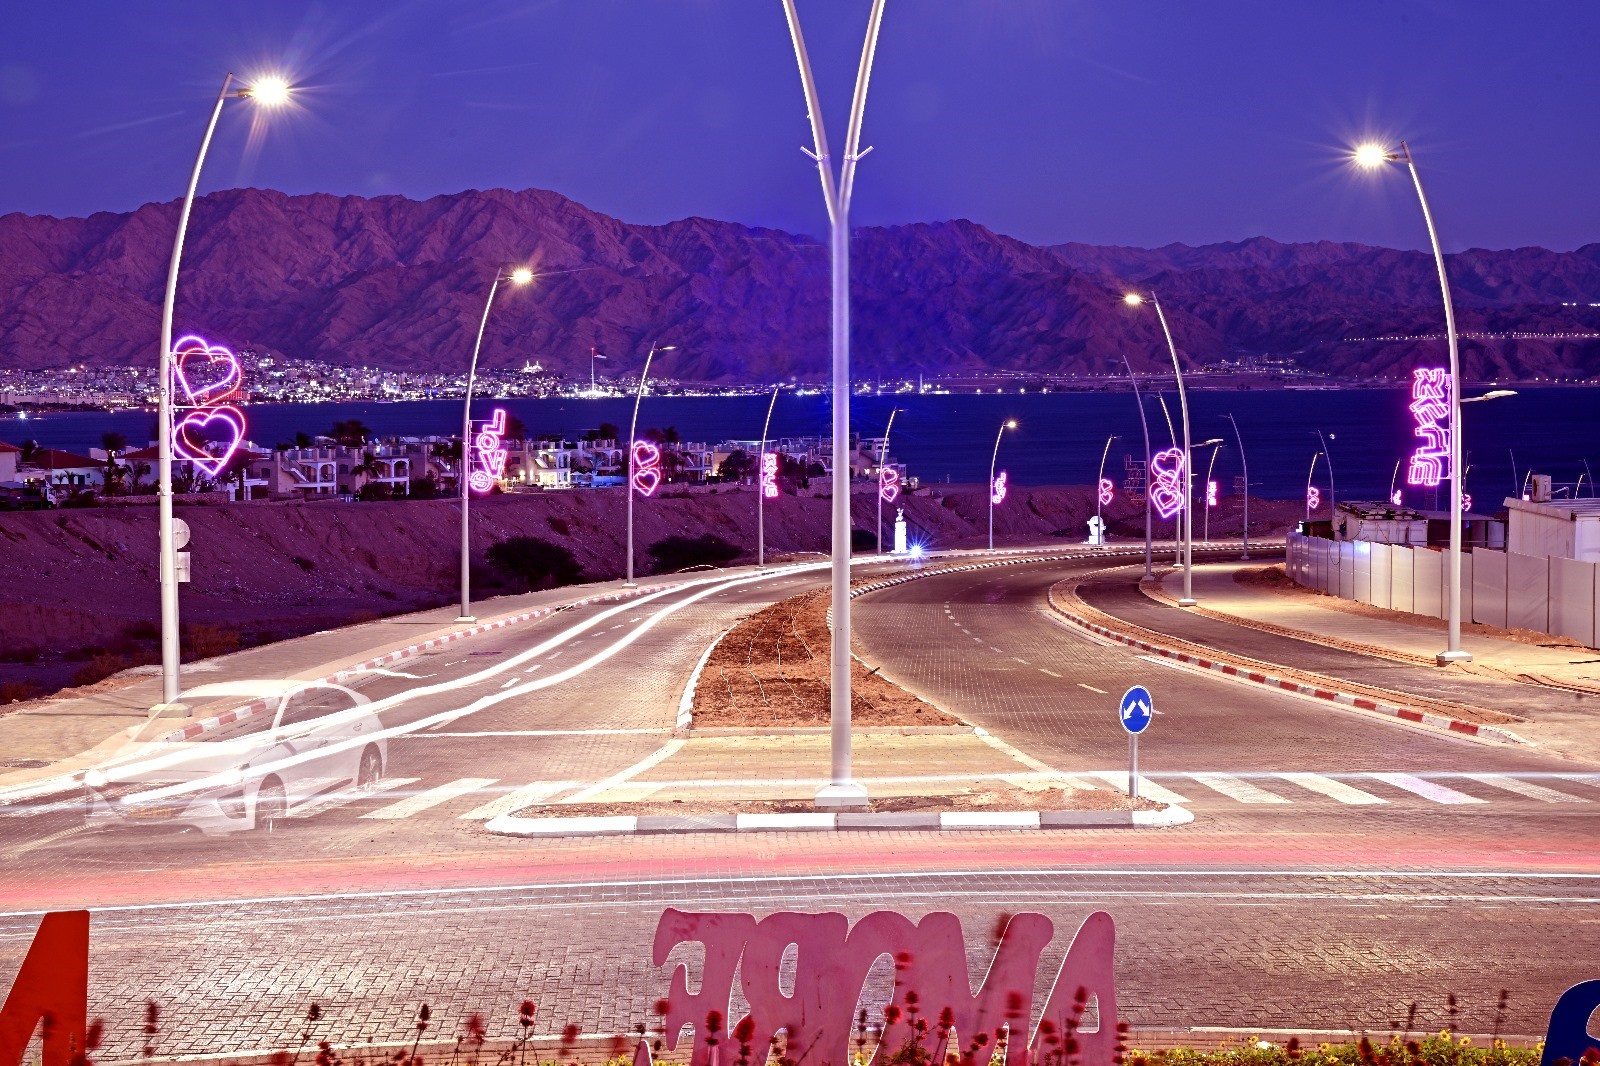 פרויקט התאורה לאורך כביש האהבה בעיר הדרומית  זכה בתחרות בינלאומית